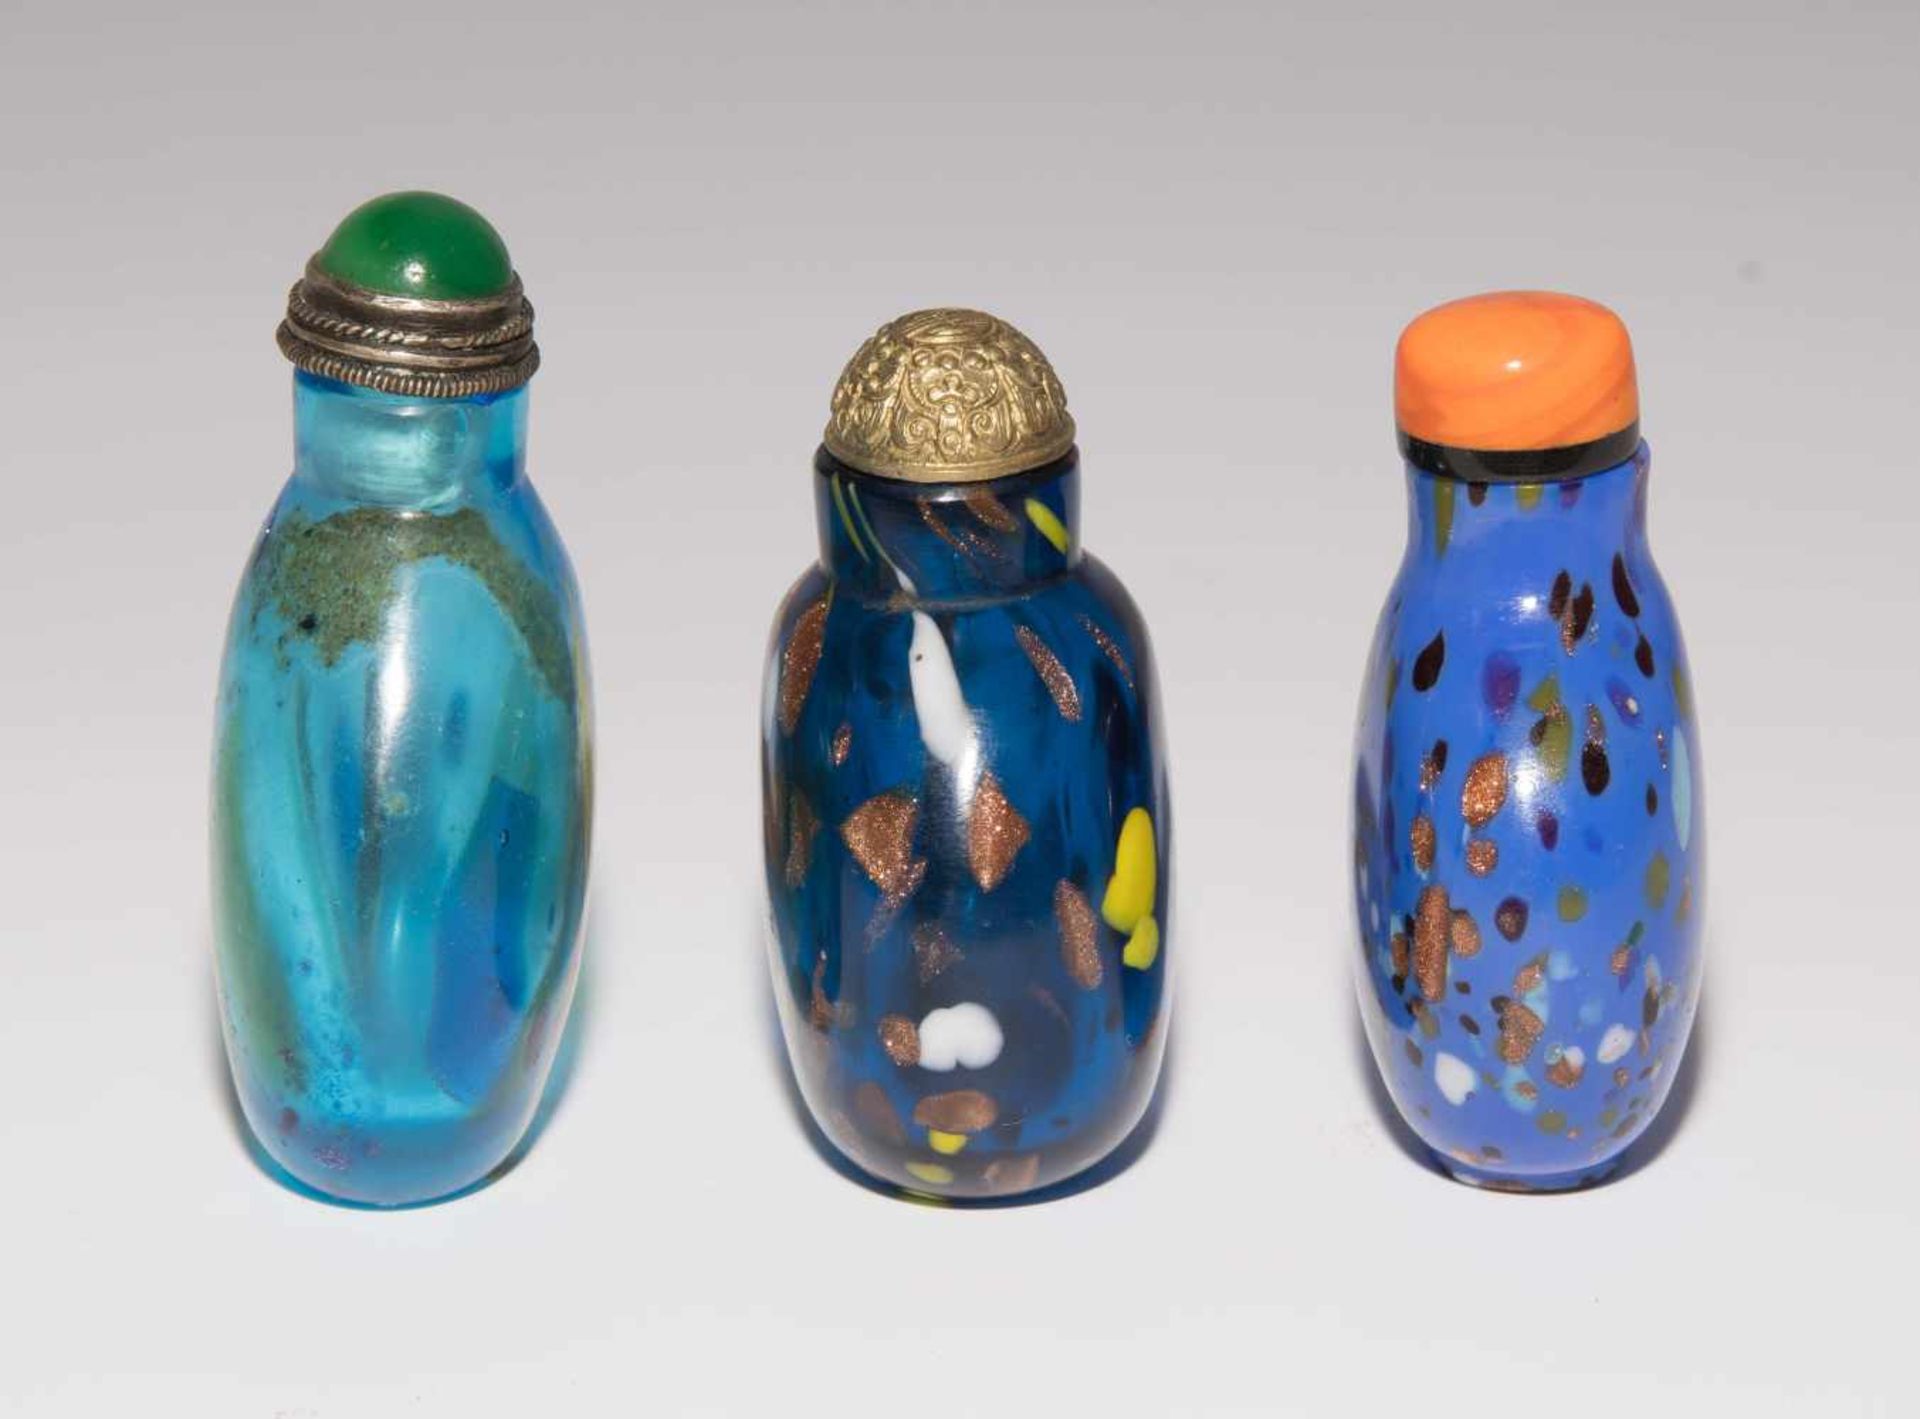 6 Glas Snuff BottlesChina. Opakes und transparentes Glas in verschiedenen Blautönen tlw. bunt - Image 15 of 15